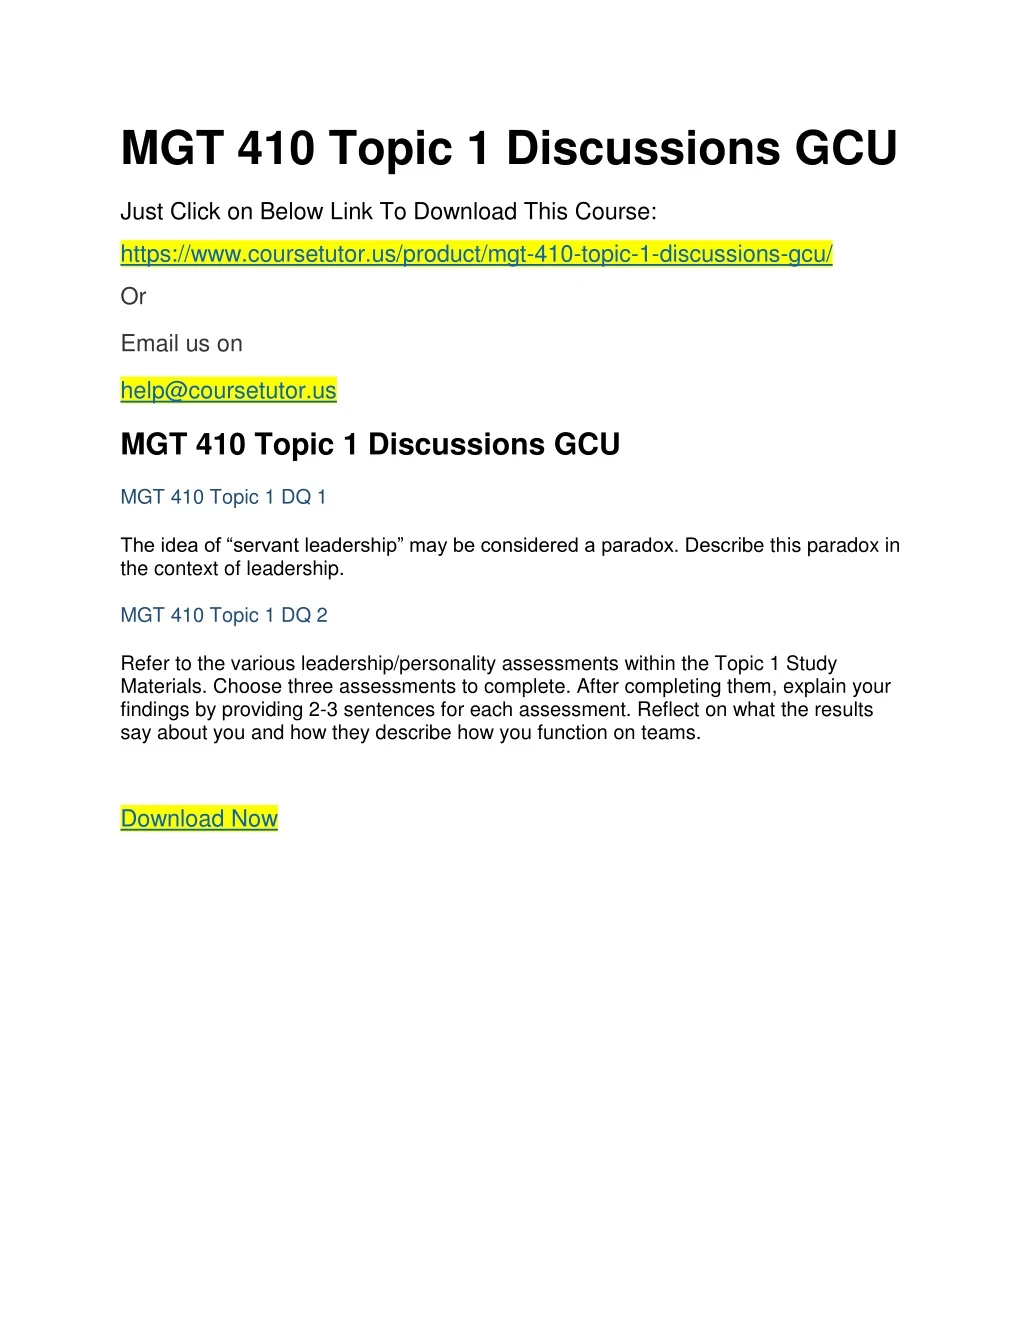 mgt 410 topic 1 discussions gcu